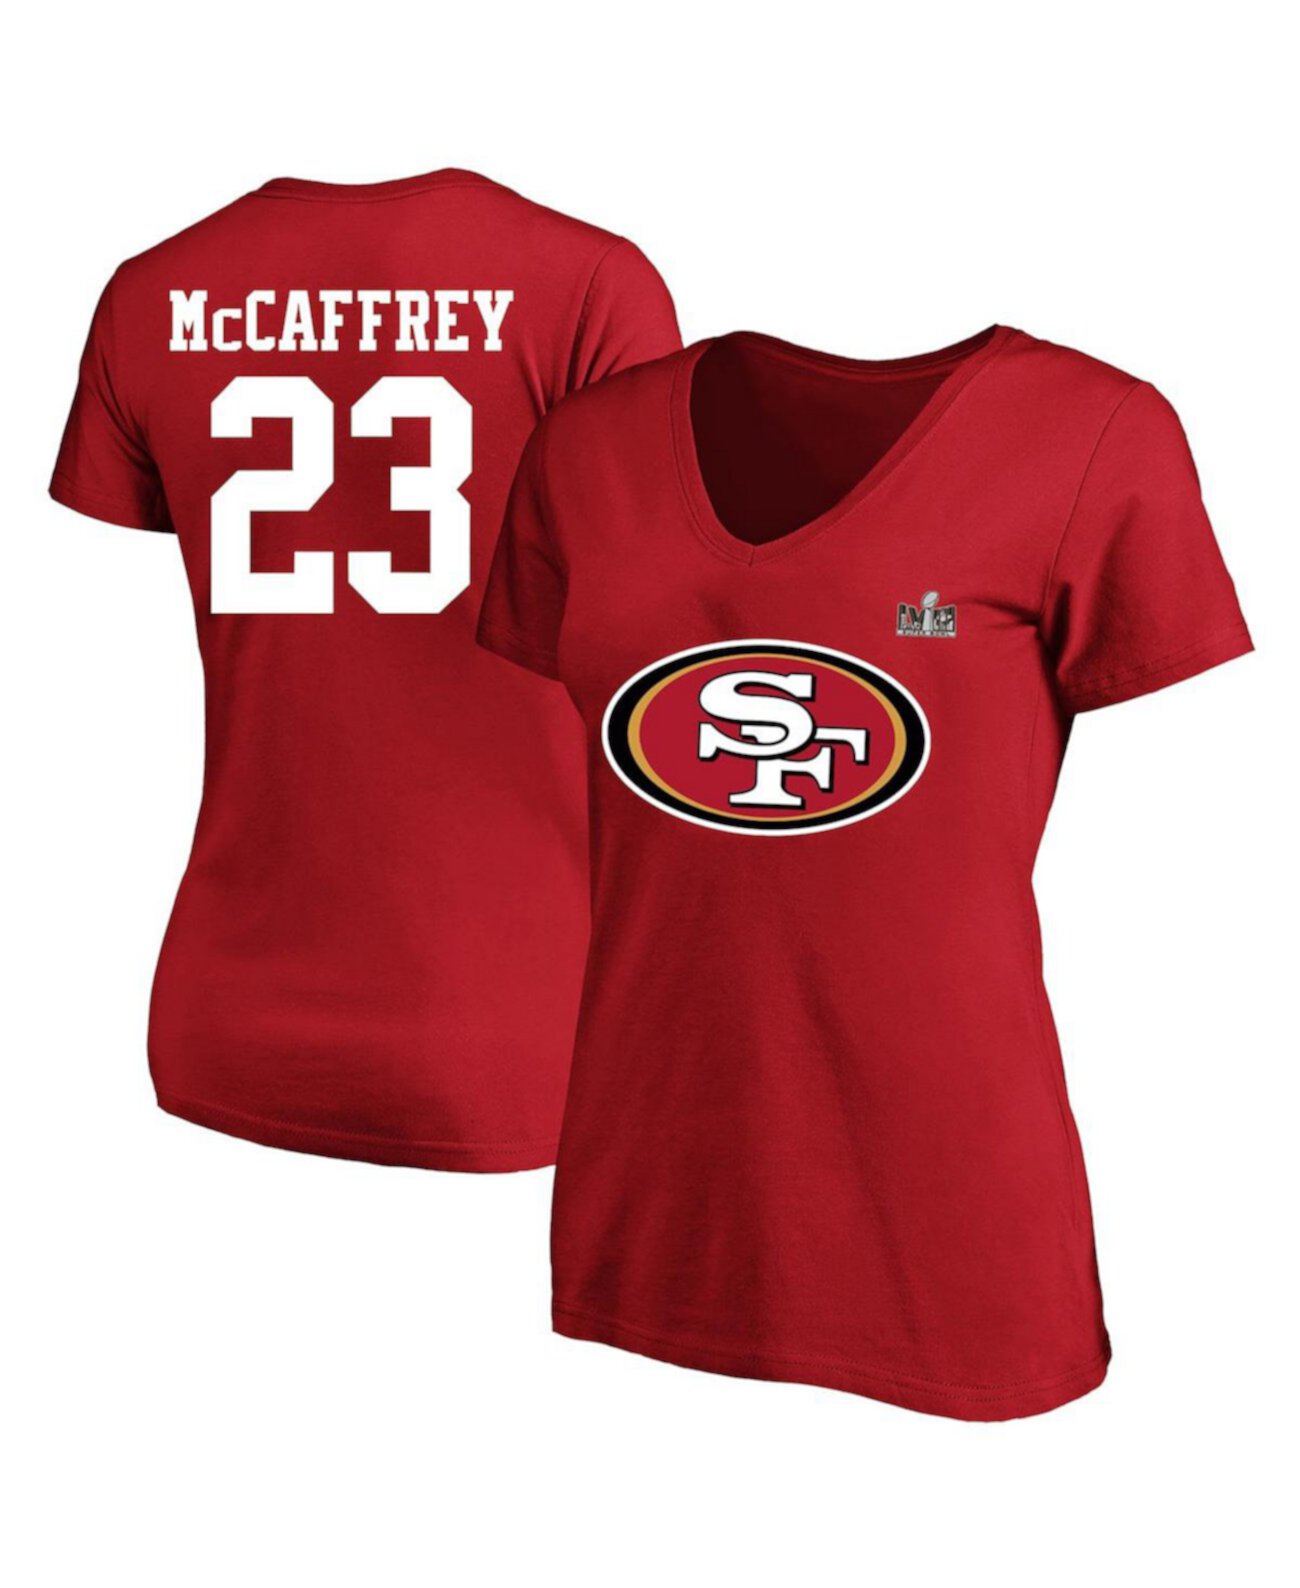 Женская футболка Christian McCaffrey Scarlet San Francisco 49ers Super Bowl LVIII размера плюс с именем и номером игрока с v-образным вырезом Fanatics